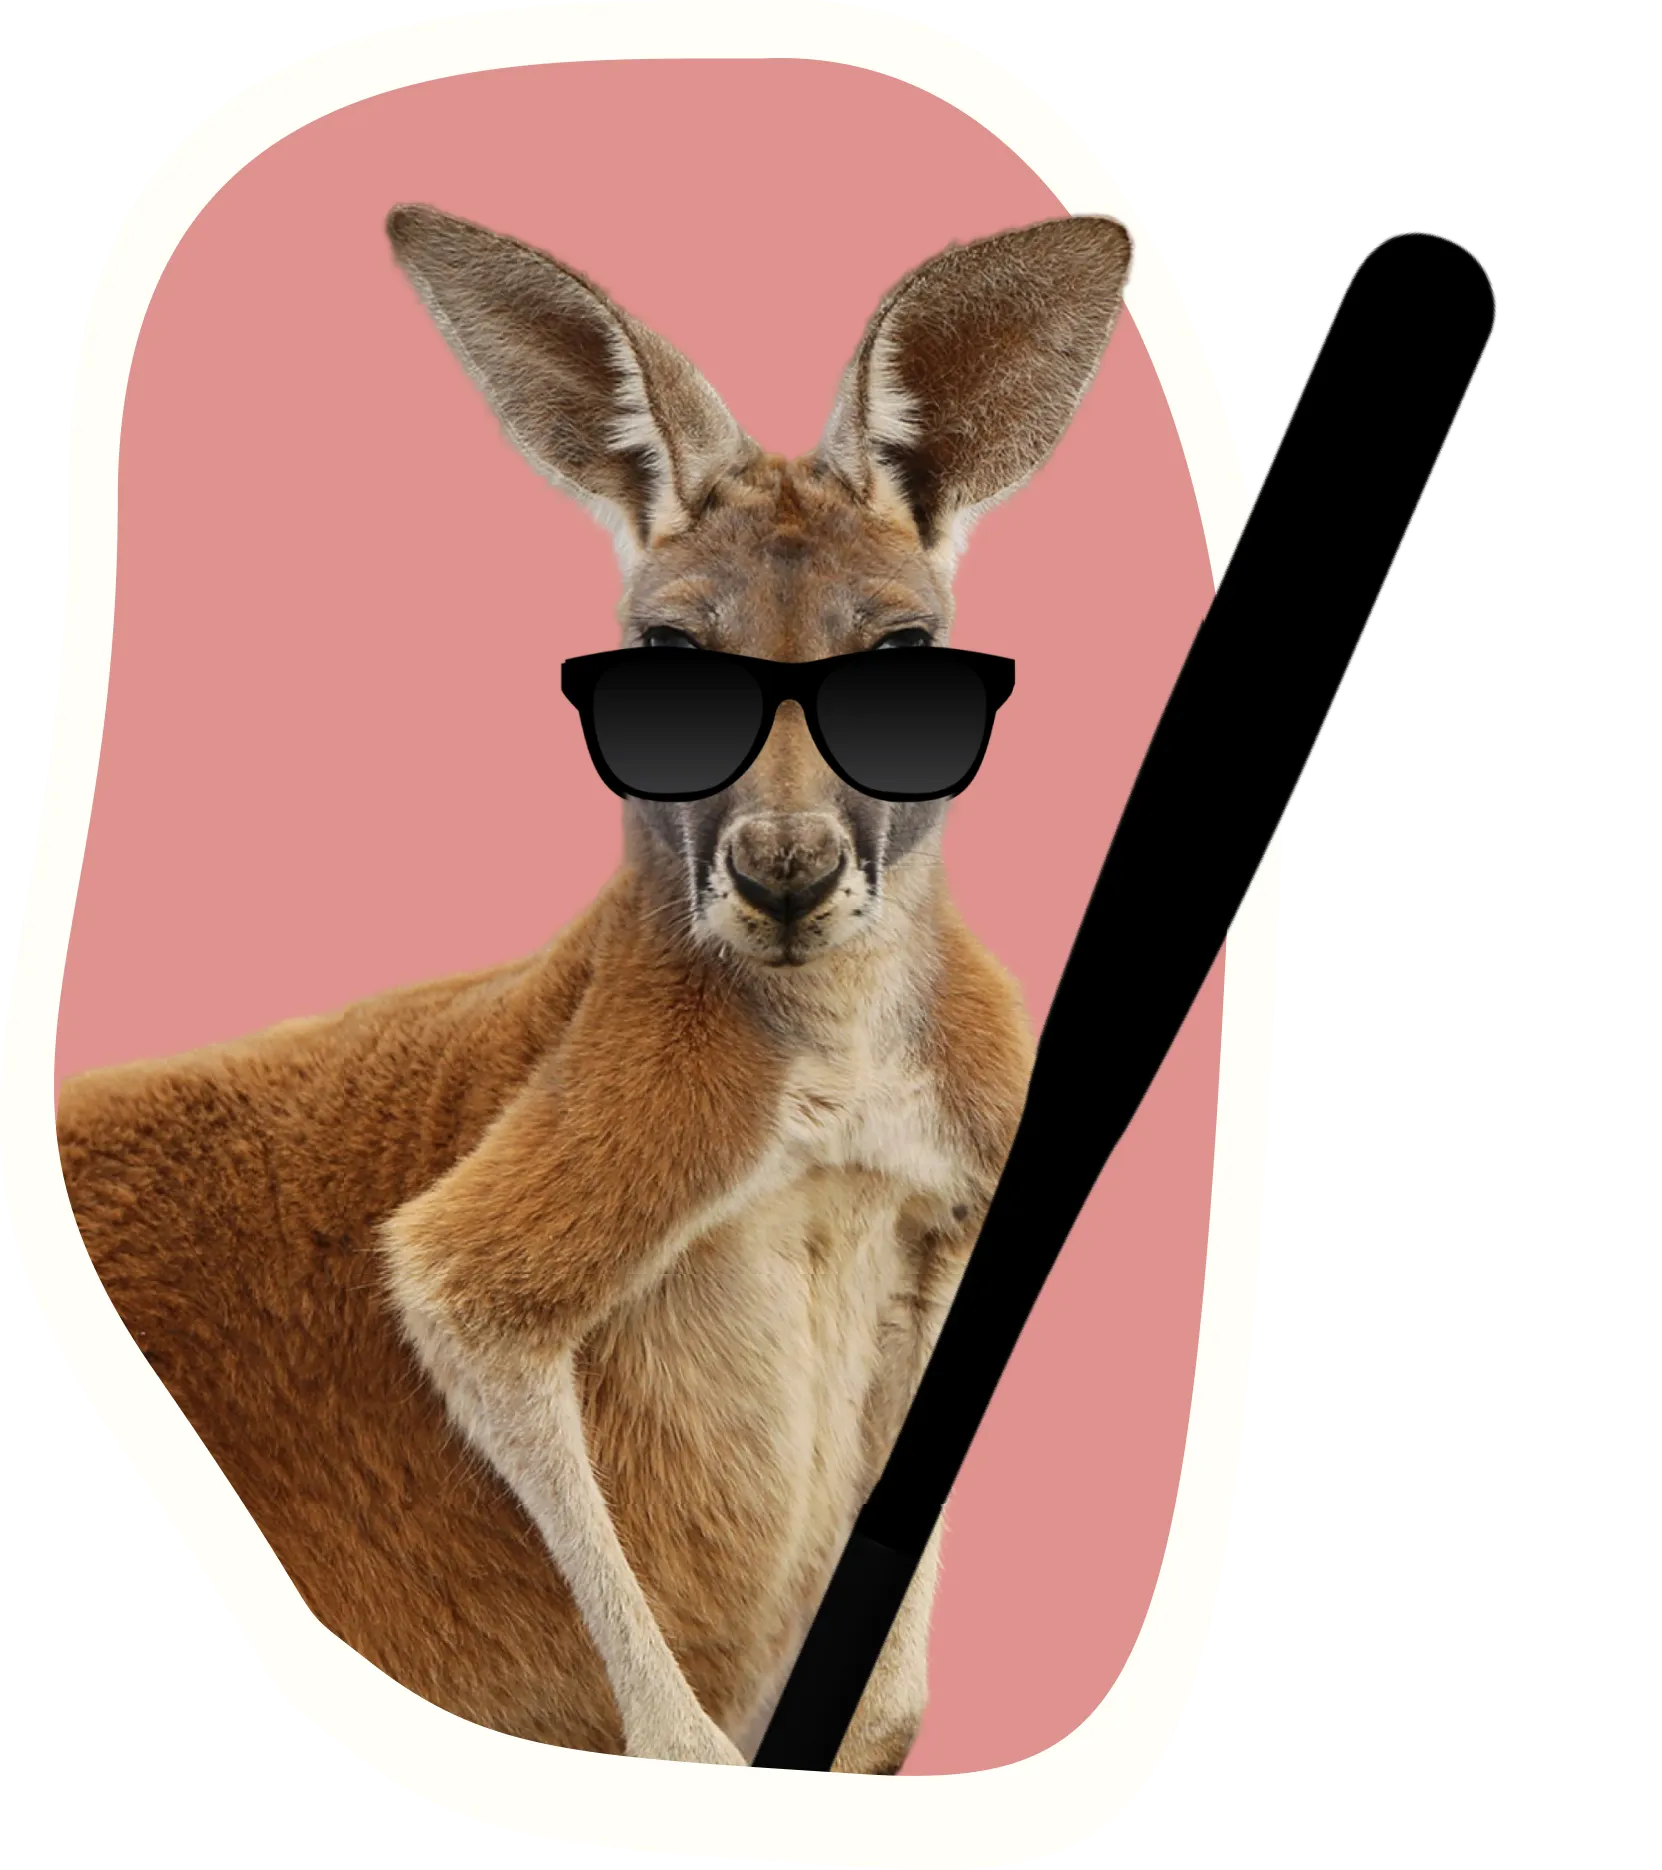 A kangaroo with a bat